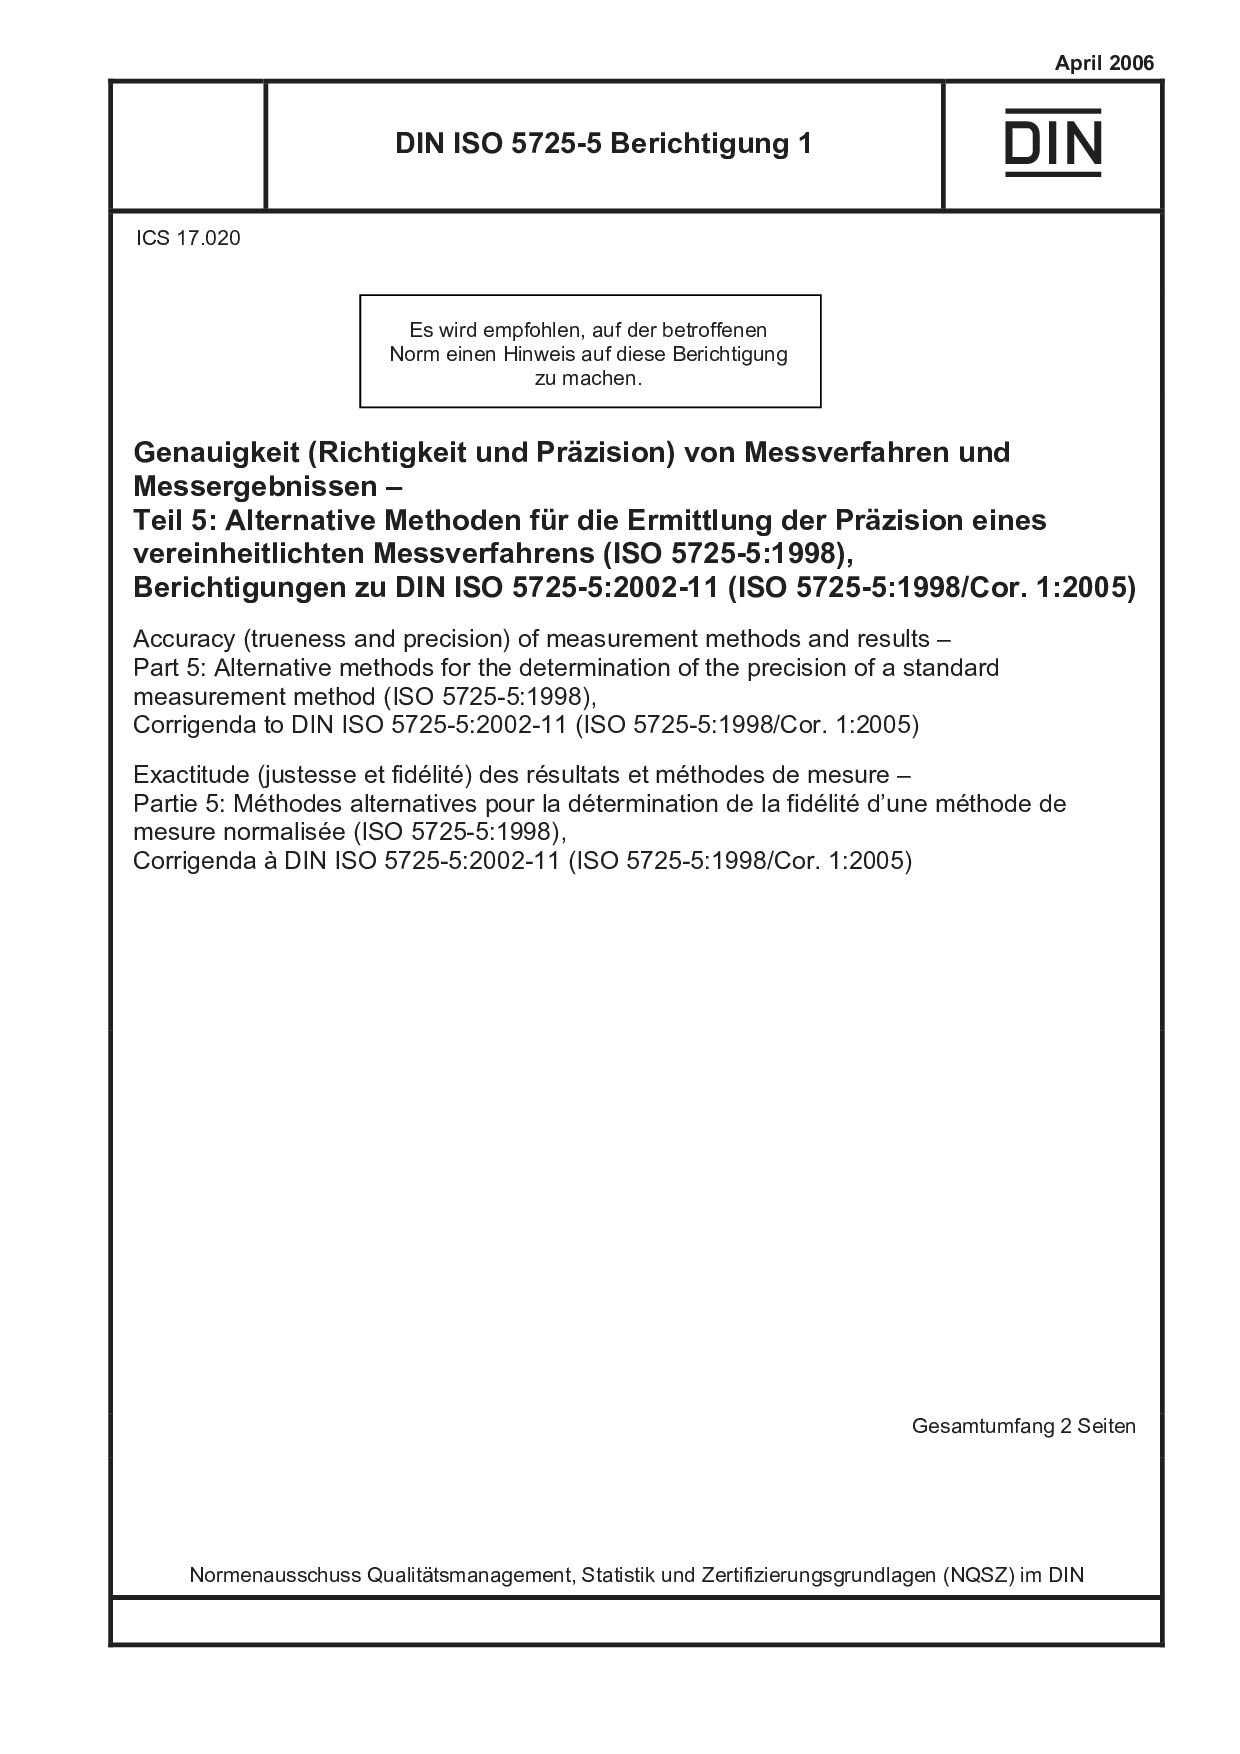 DIN ISO 5725-5 Berichtigung 1:2006